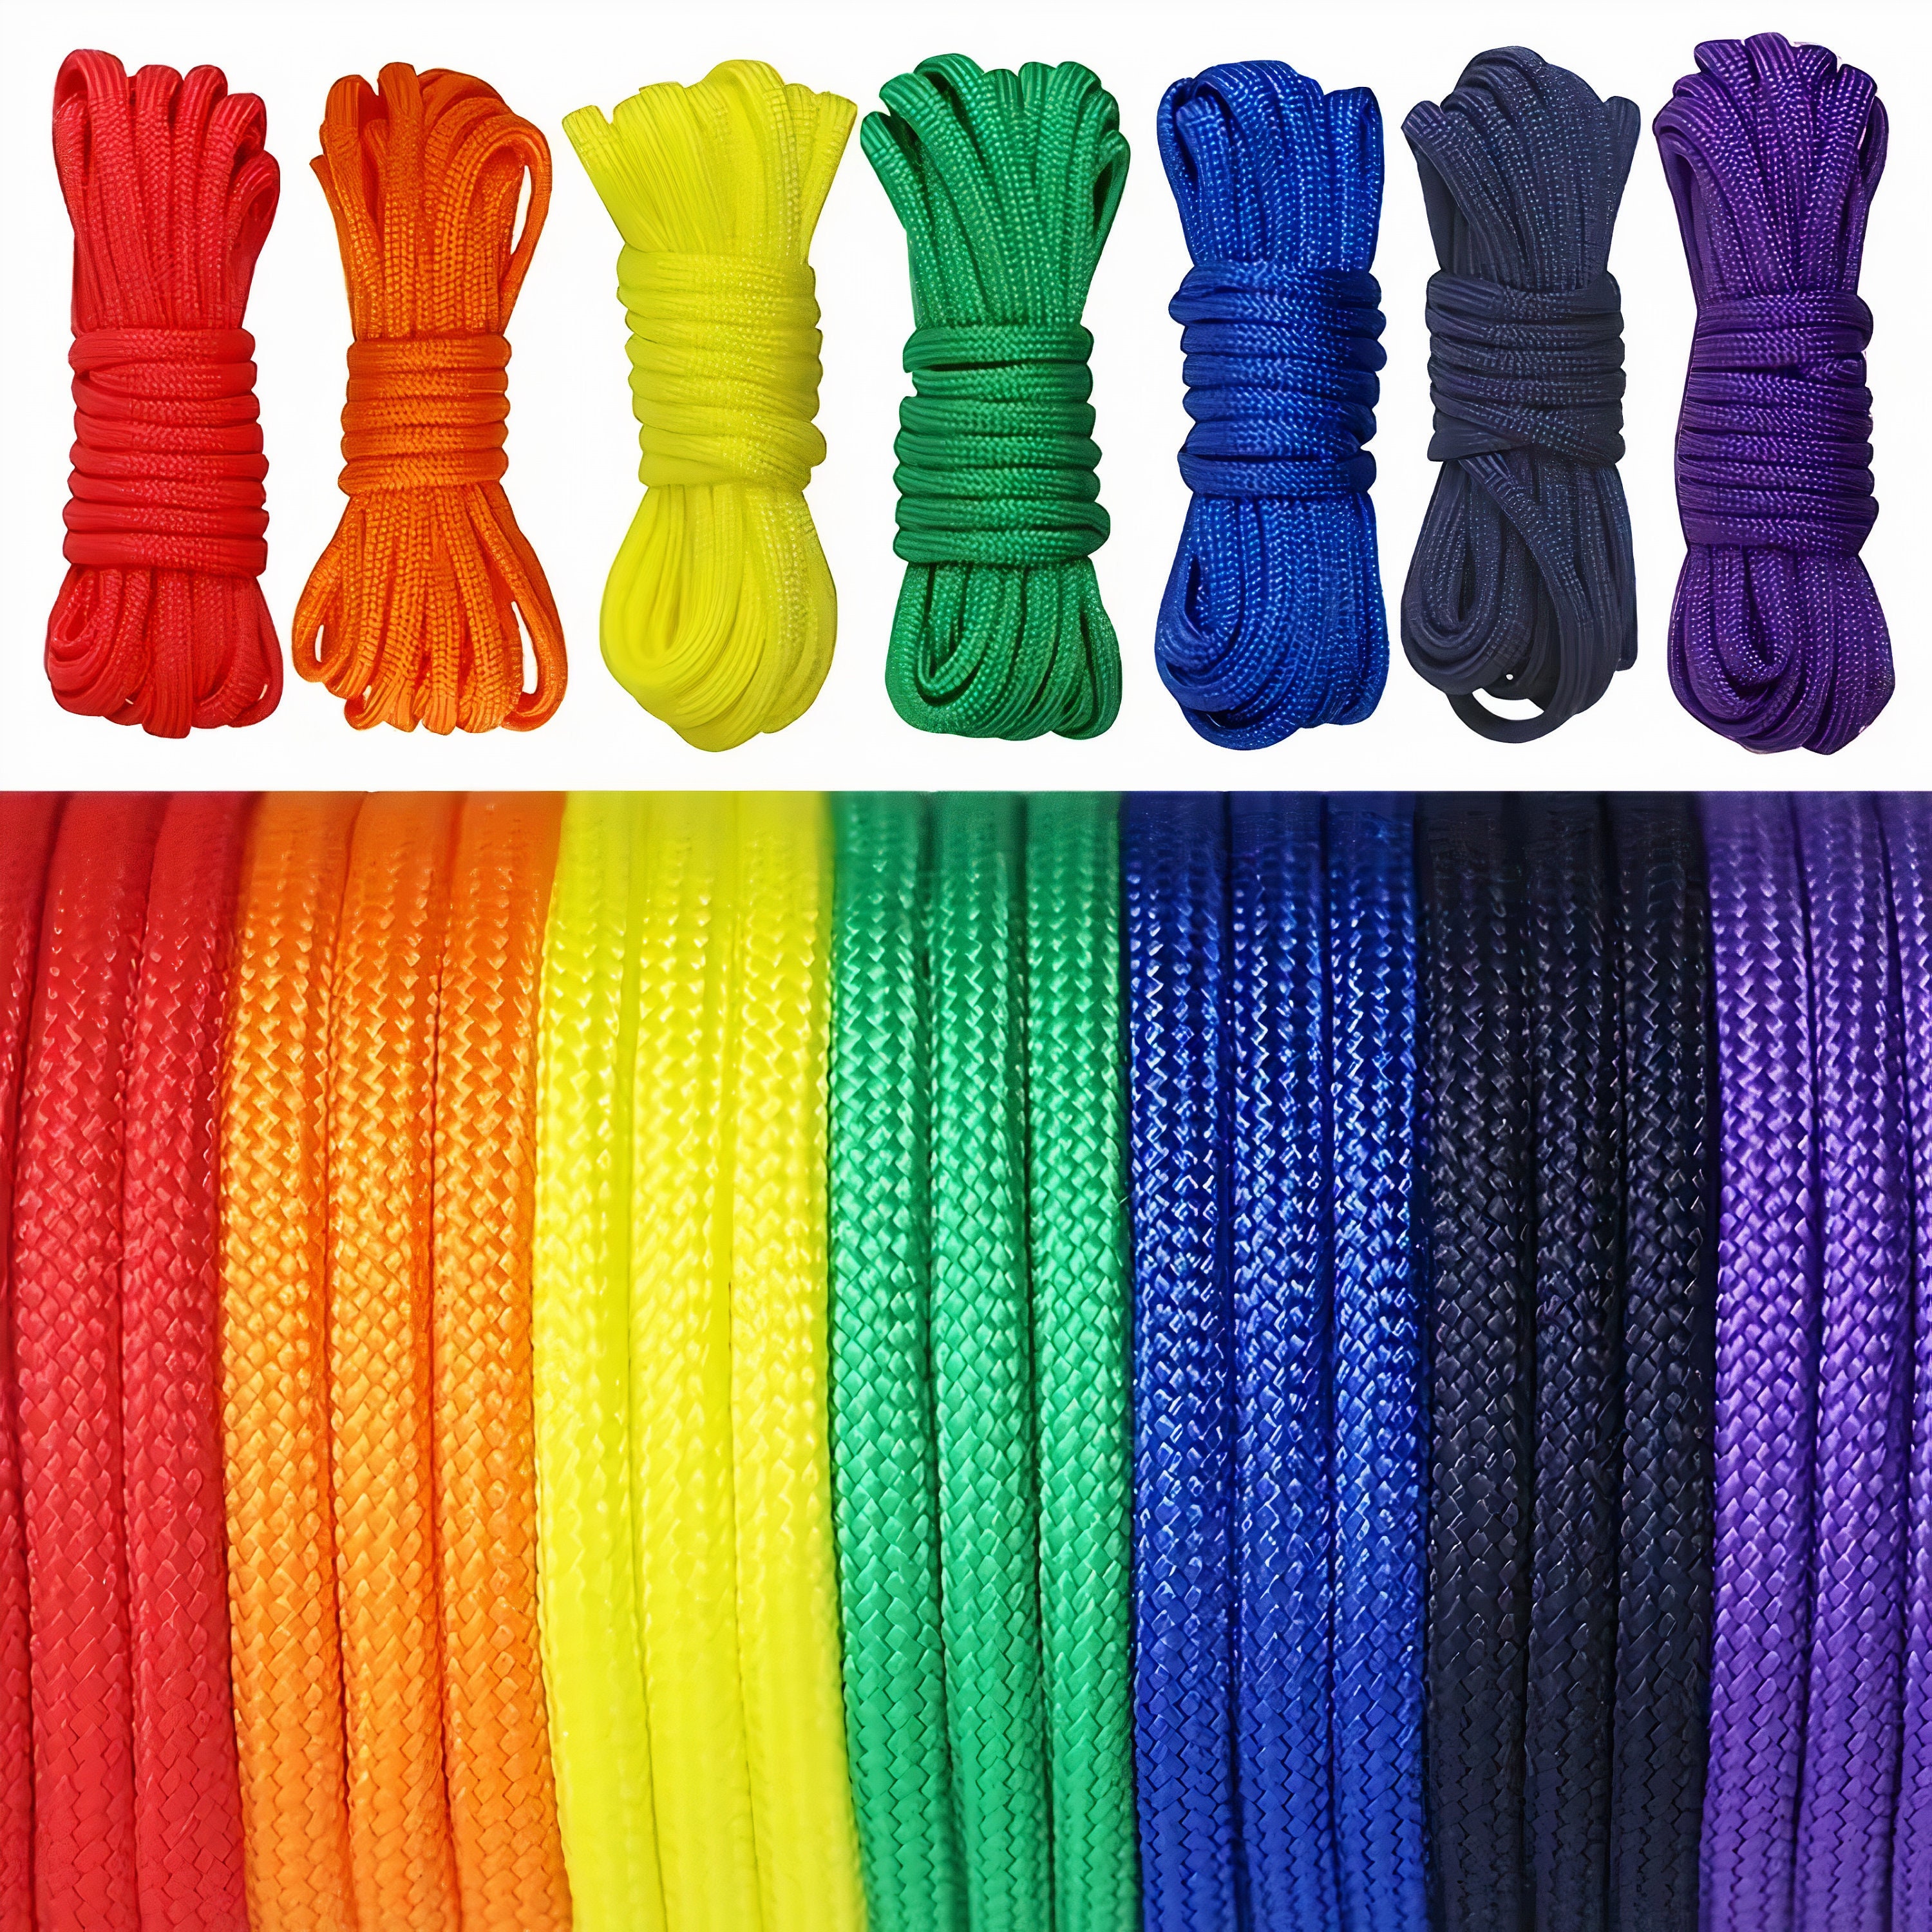 Cuerda paracord de 3 mm, cable para hacer pulsera de supervivencia, cuerda  de macramé de 3 mm, cordón de escalada fuerte, cuerda de paracaídas  redondo, elegir entre 6 colores diferentes -  México